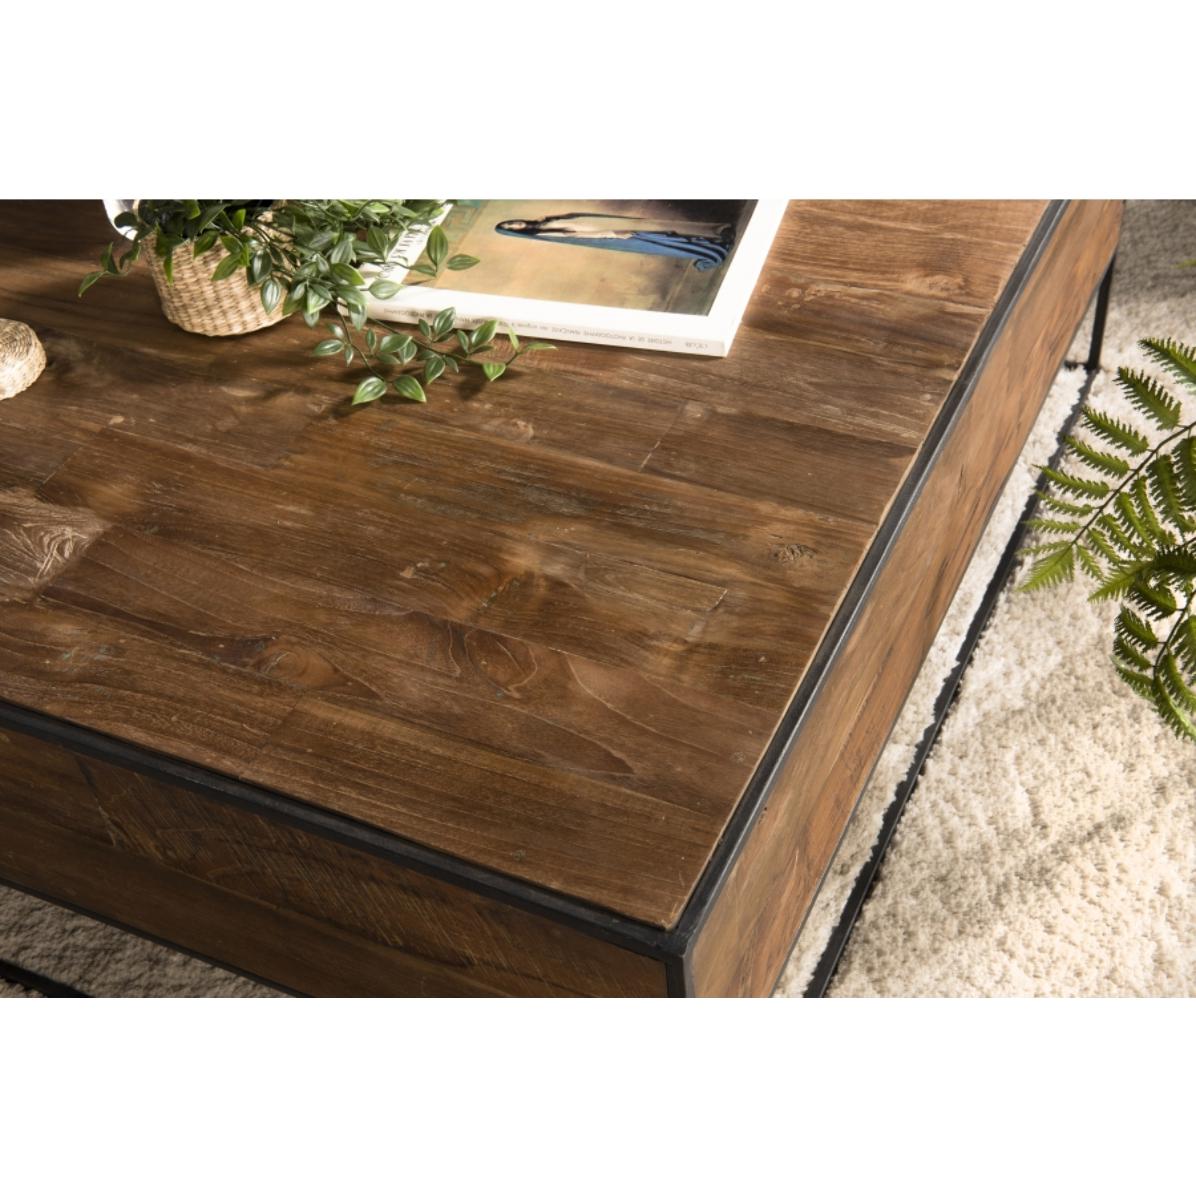 ALIDA - Table basse bois carrée 100x100cm Teck recyclé et métal